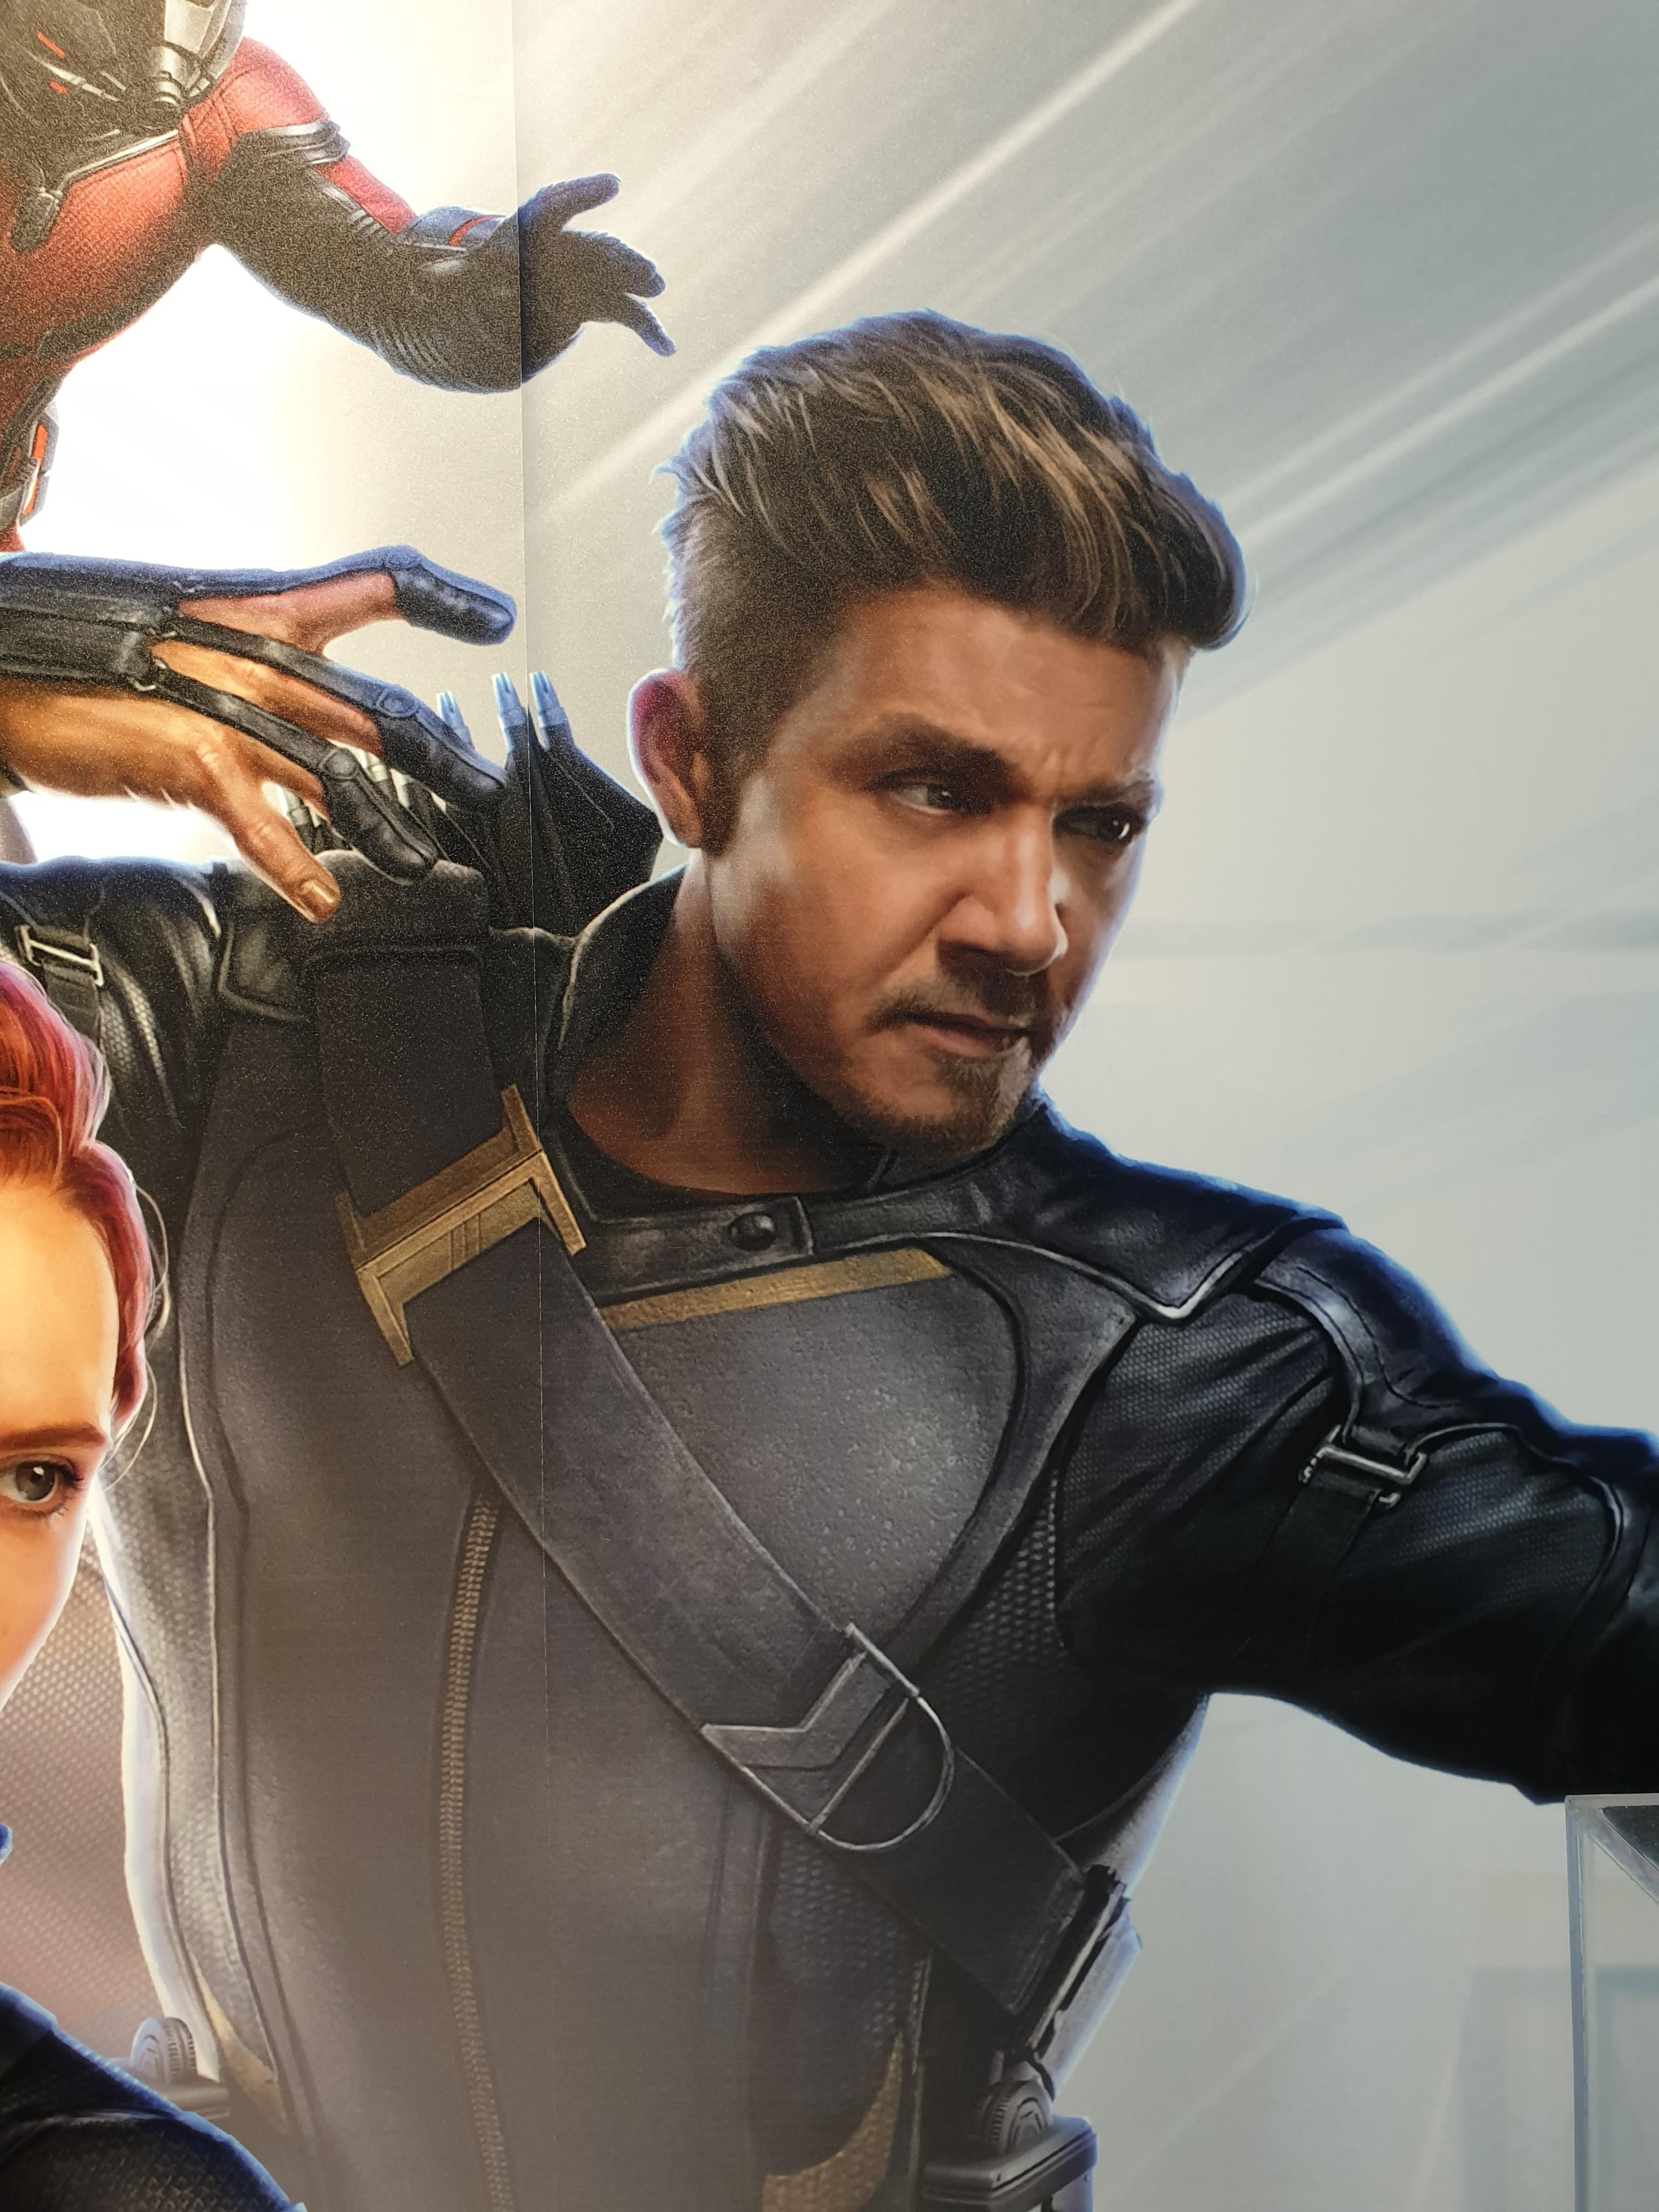 Avengers Endgame Jeremy Renner As Ronin Artwork Wallpapers